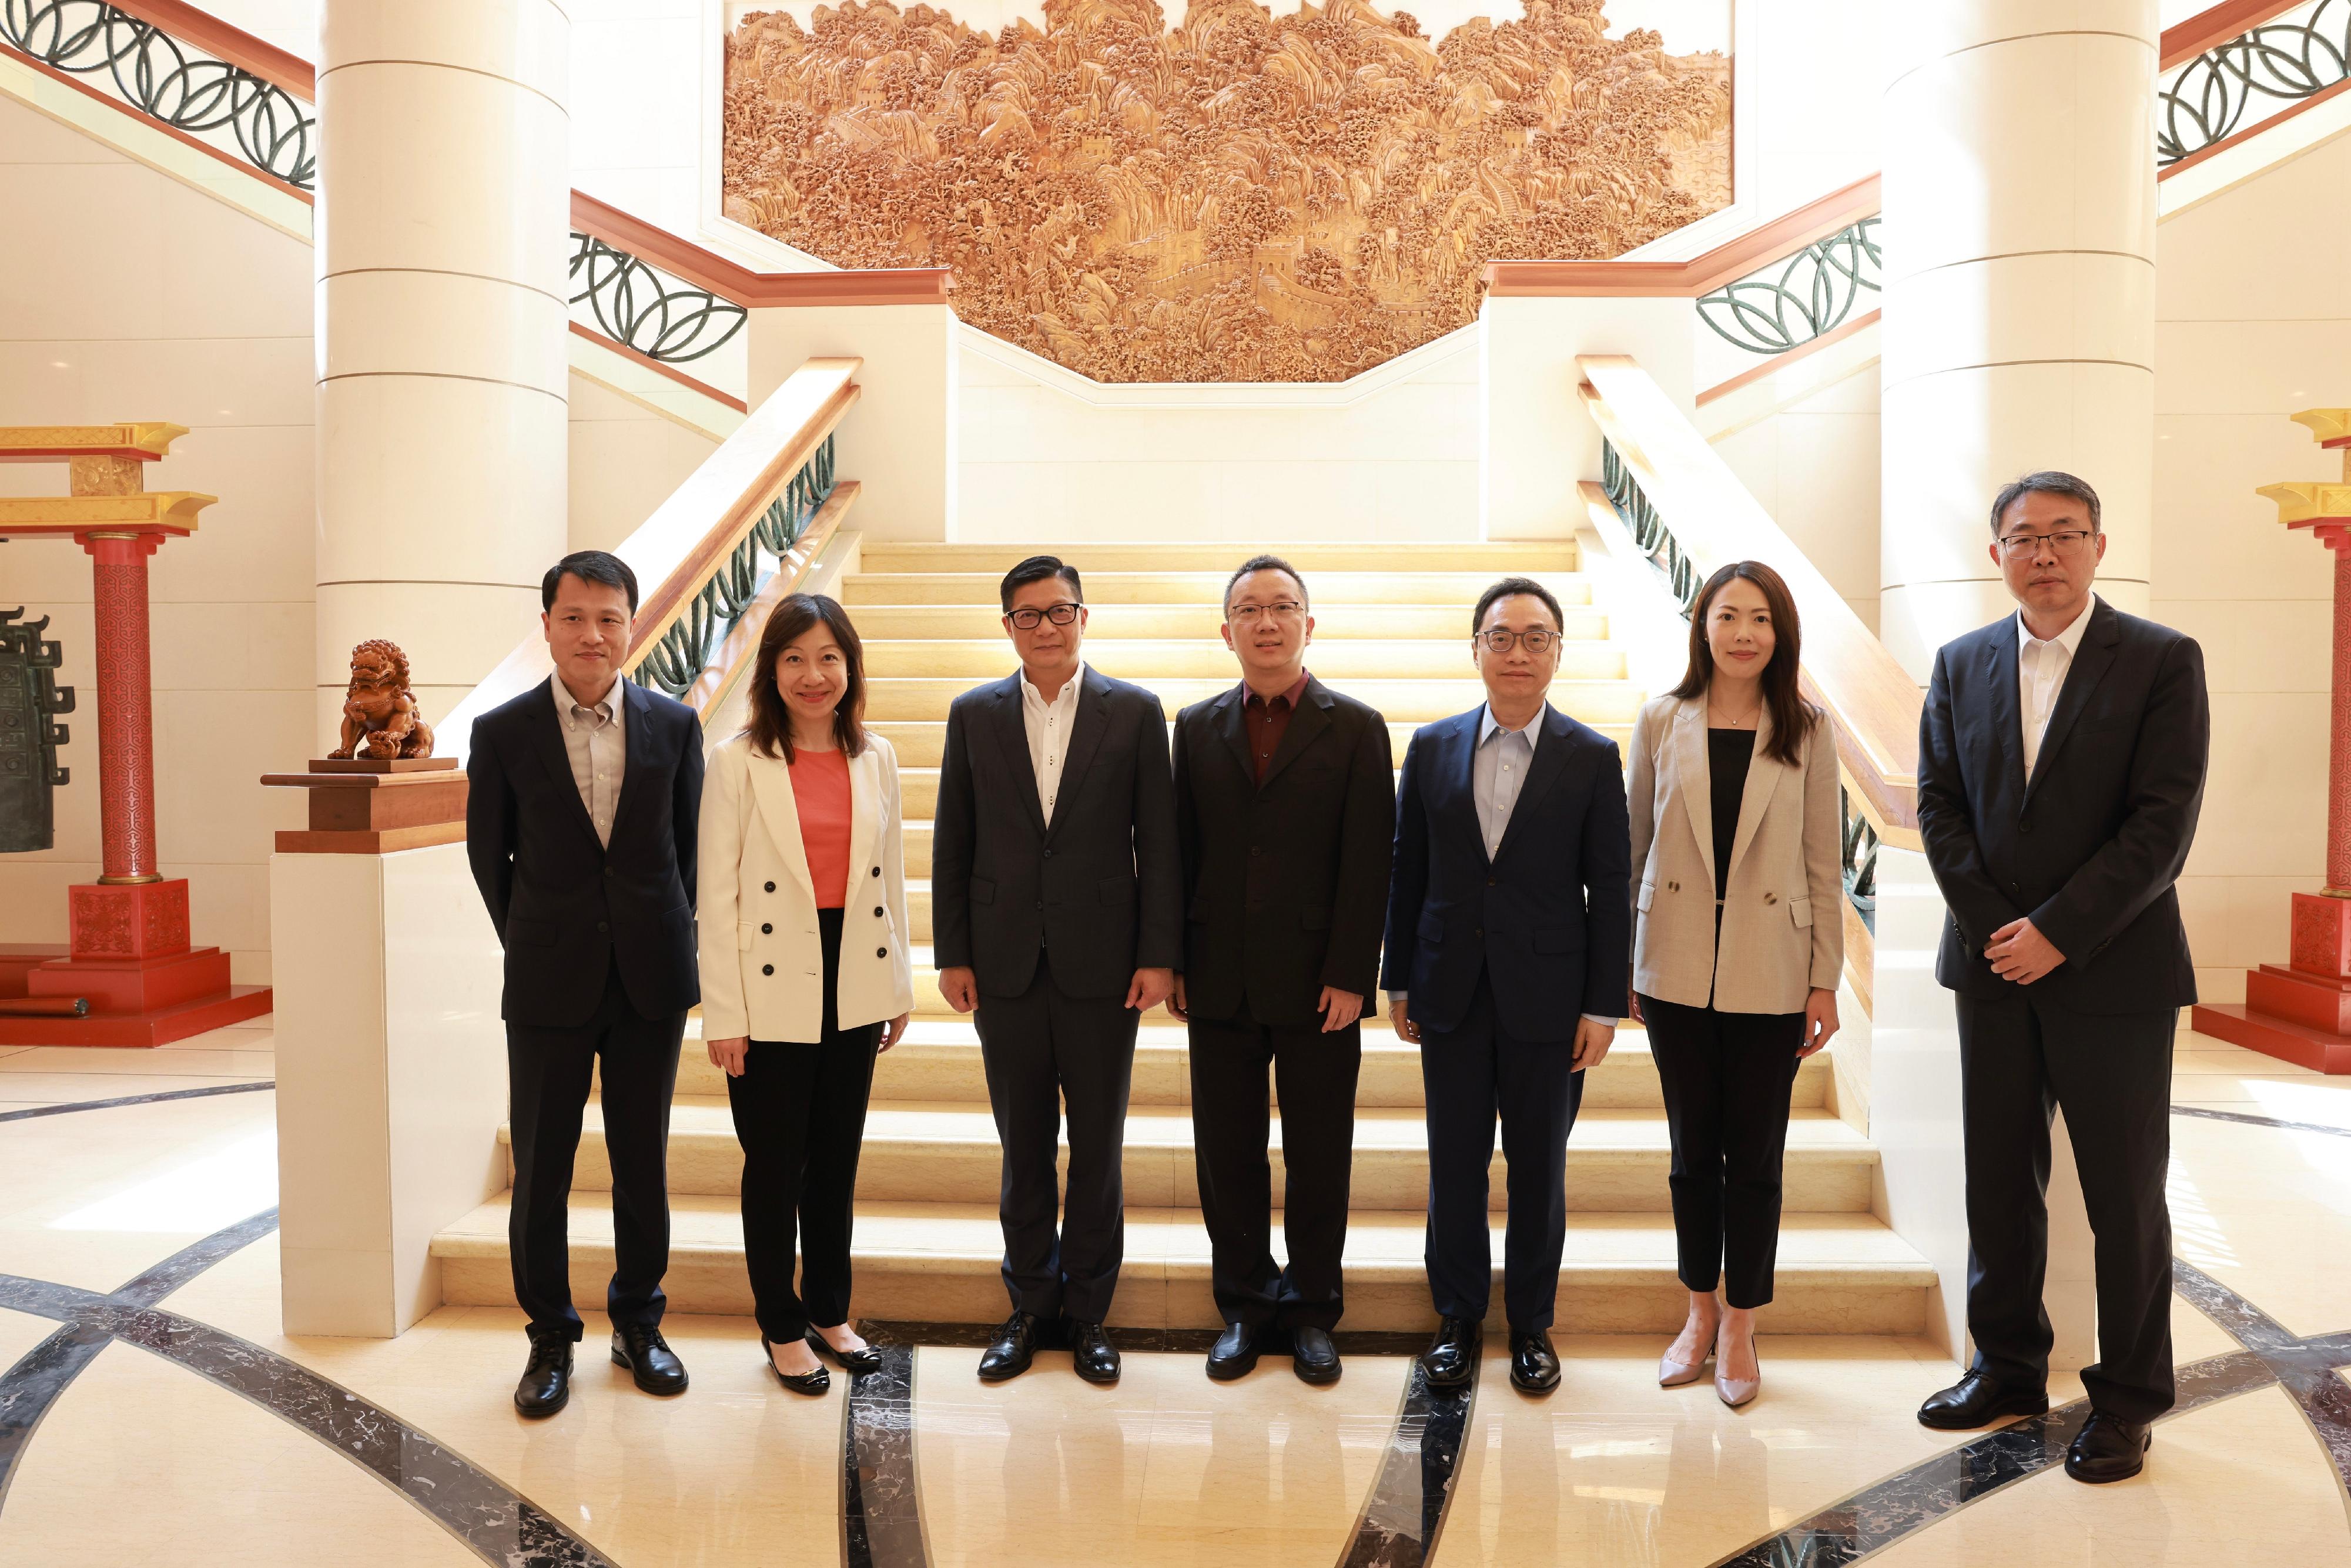 保保安局局長鄧炳強今日（八月三十日）展開在新加坡的訪問行程。圖示鄧炳強（左三）與中國駐新加坡臨時代辦大使朱憬（中）會面後合照。